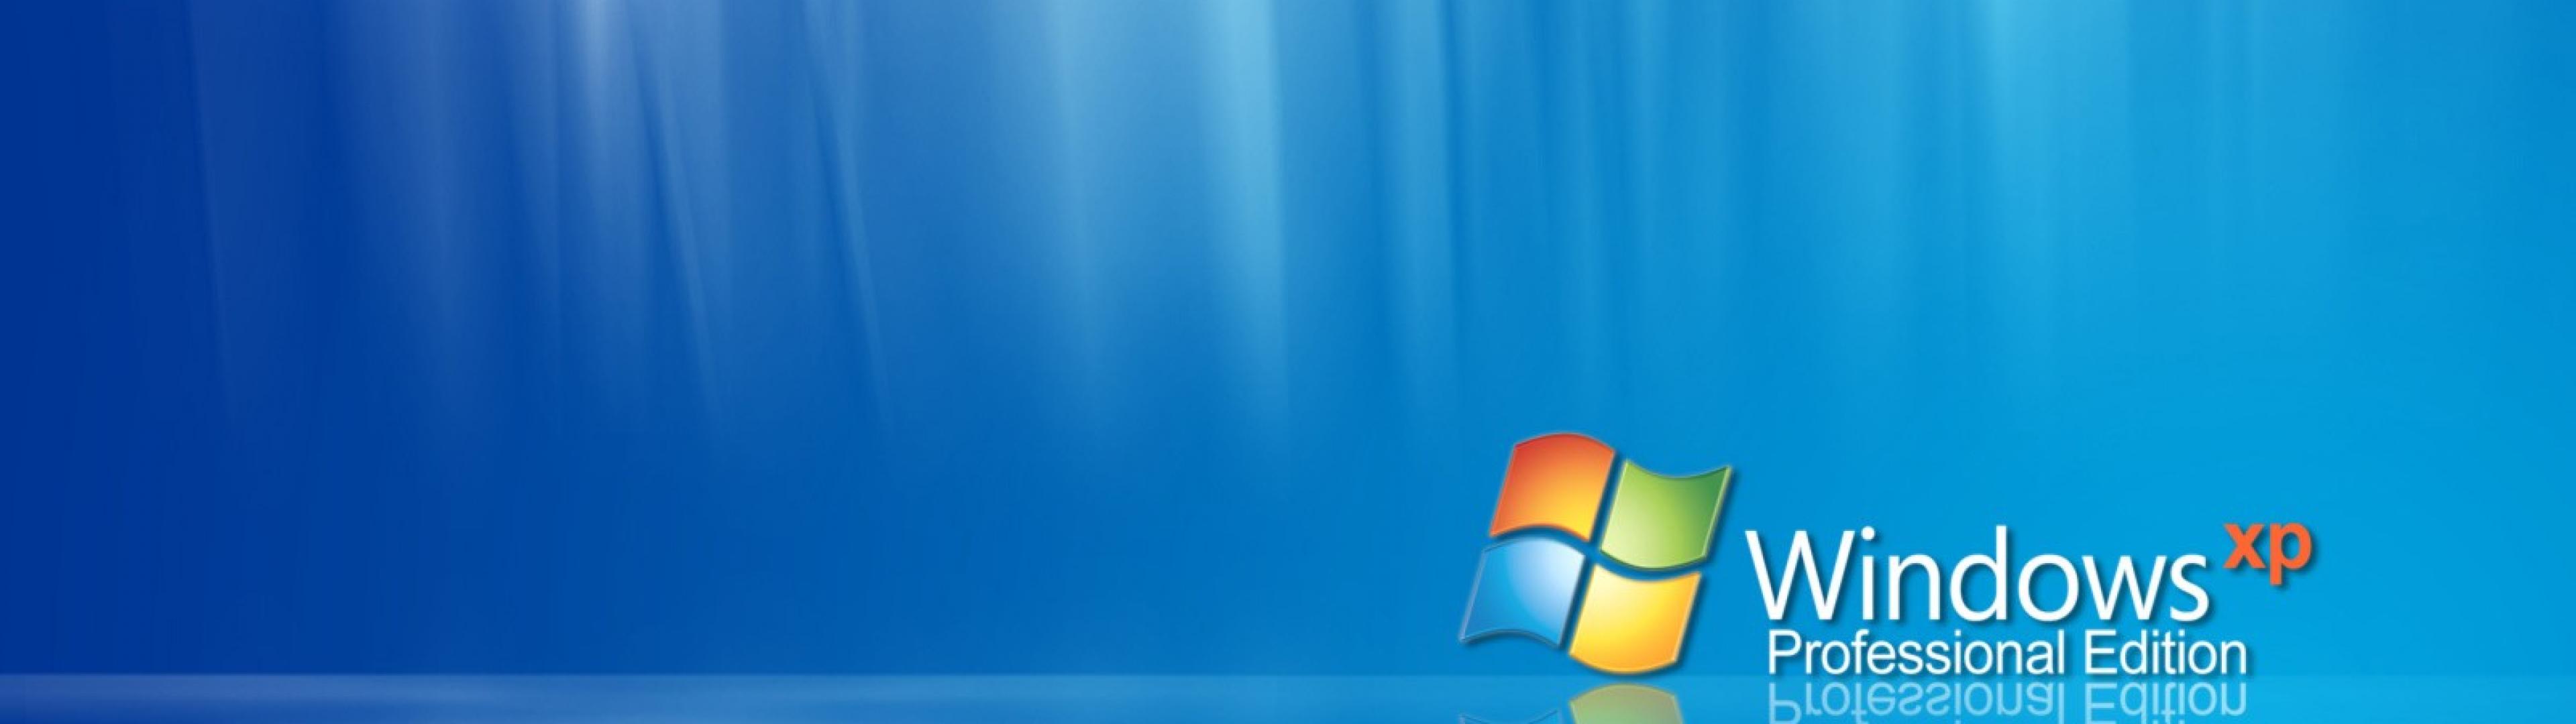 Windows Xp Microsoft Oi4y